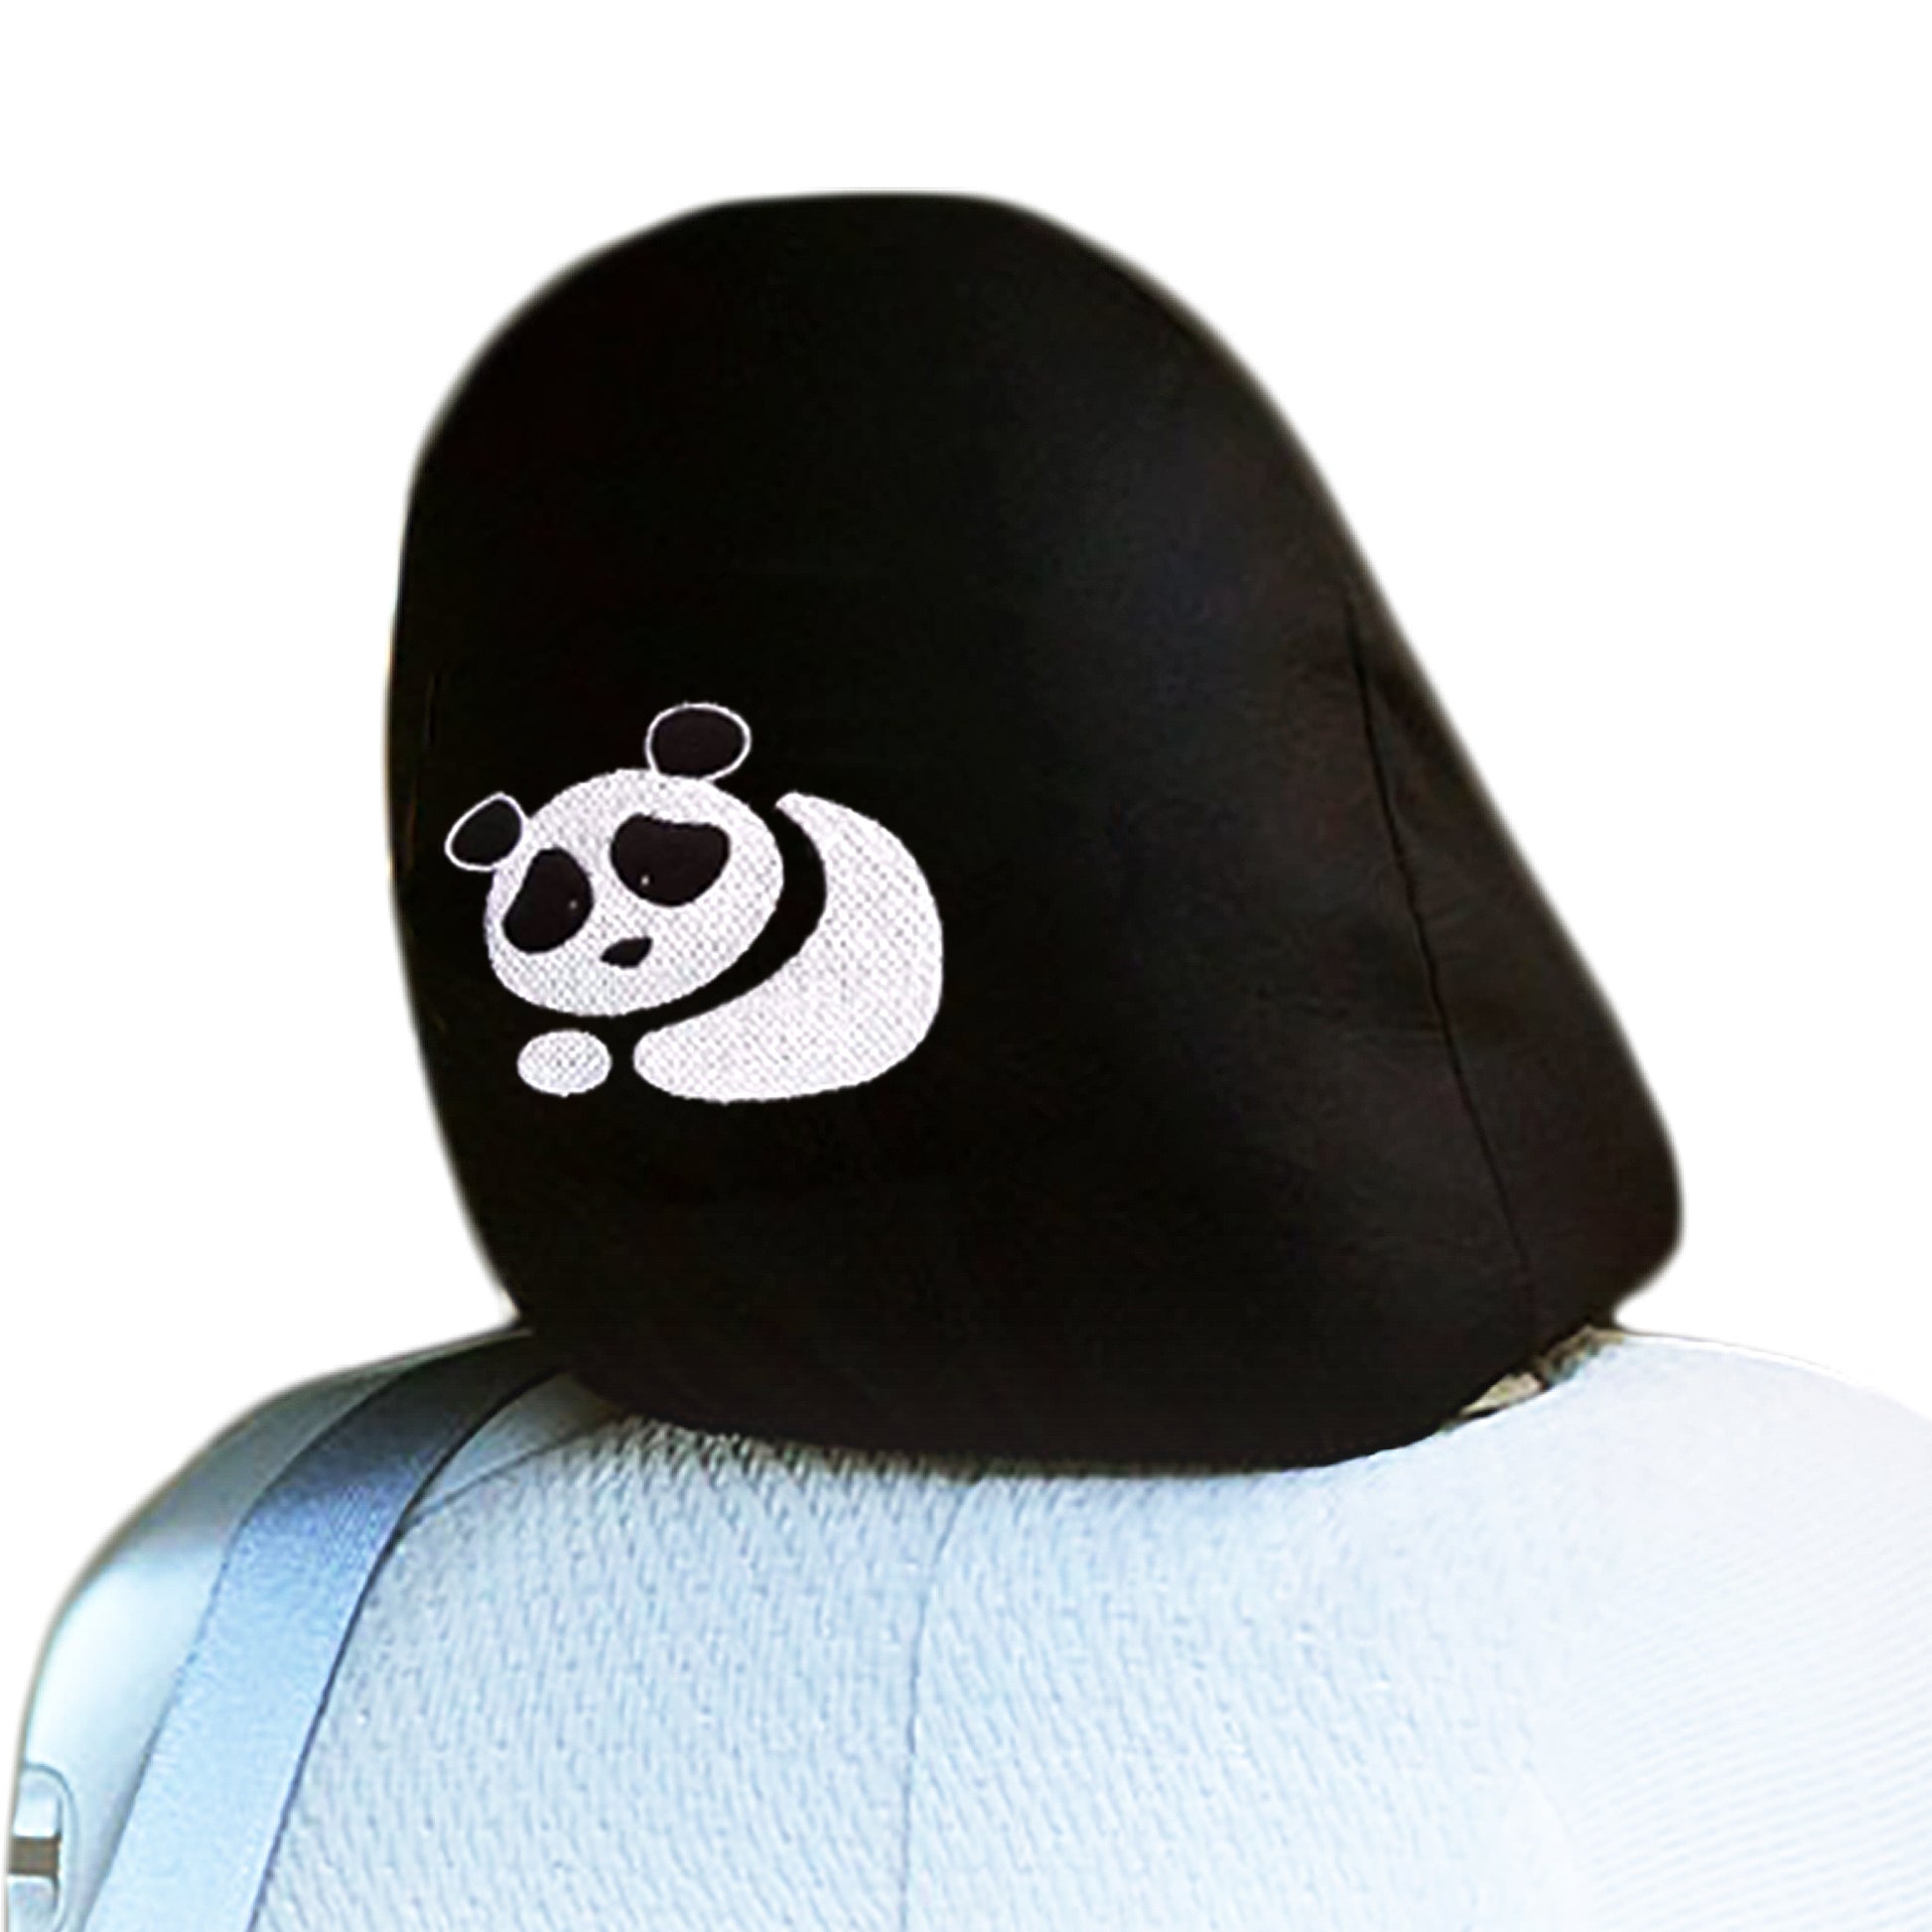 Embroidery Panda Logo Design Auto Truck SUV Car Seat Headrest Cover Accessory 1 Piece - Yupbizauto